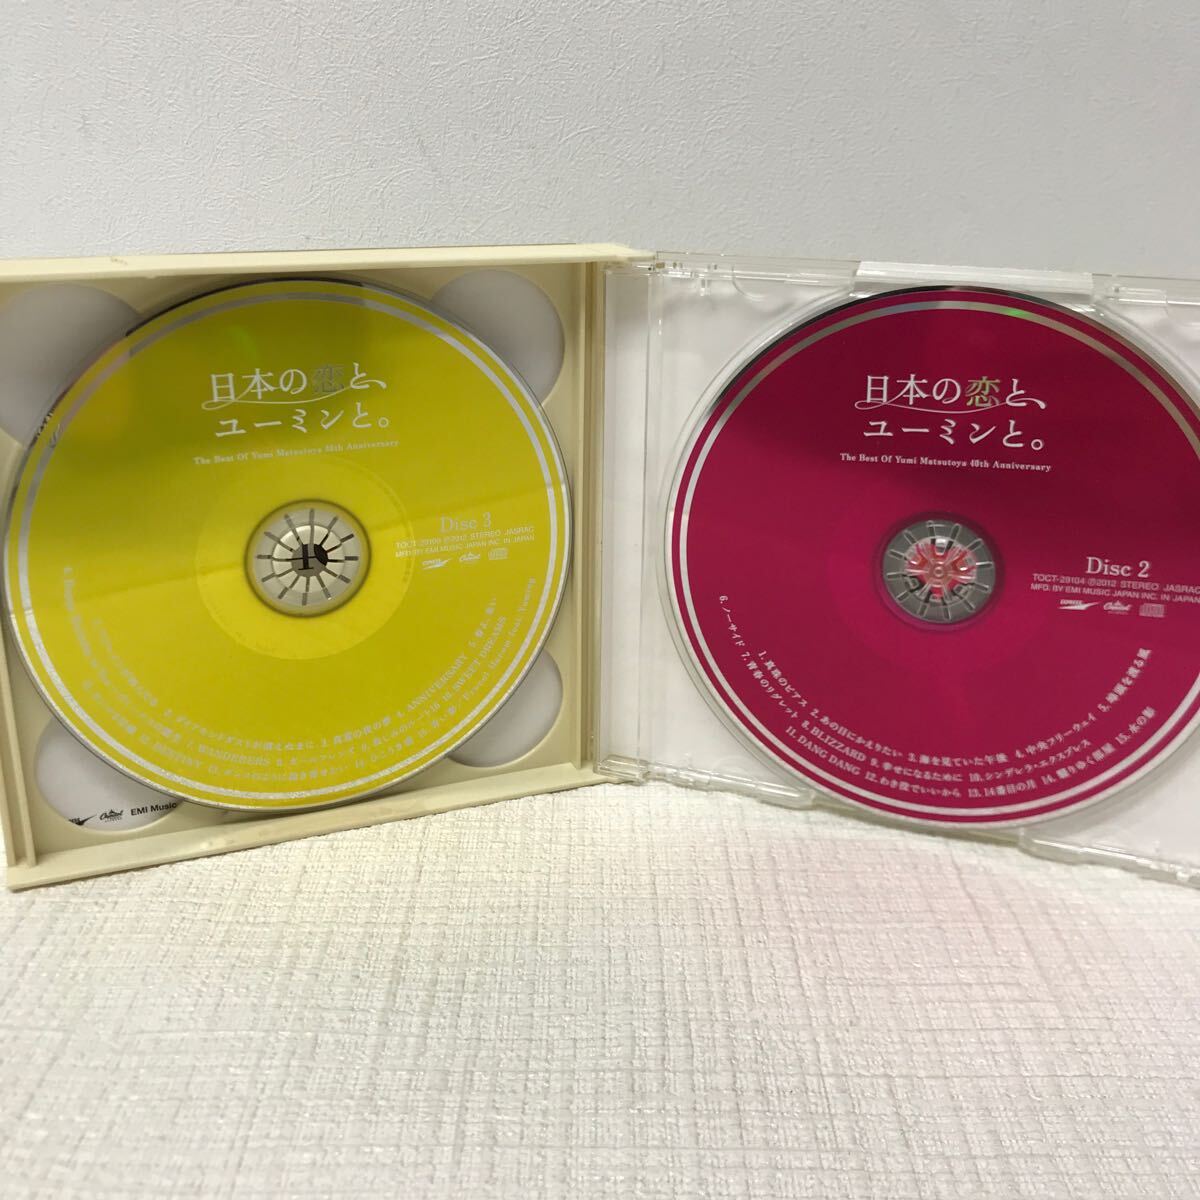 I0411A3 日本の恋と、ユーミンと。 松任谷由実 40周年記念 ベストアルバム CD 3枚組 音楽 邦楽 やさしさに包まれたなら 卒業写真 他_画像5